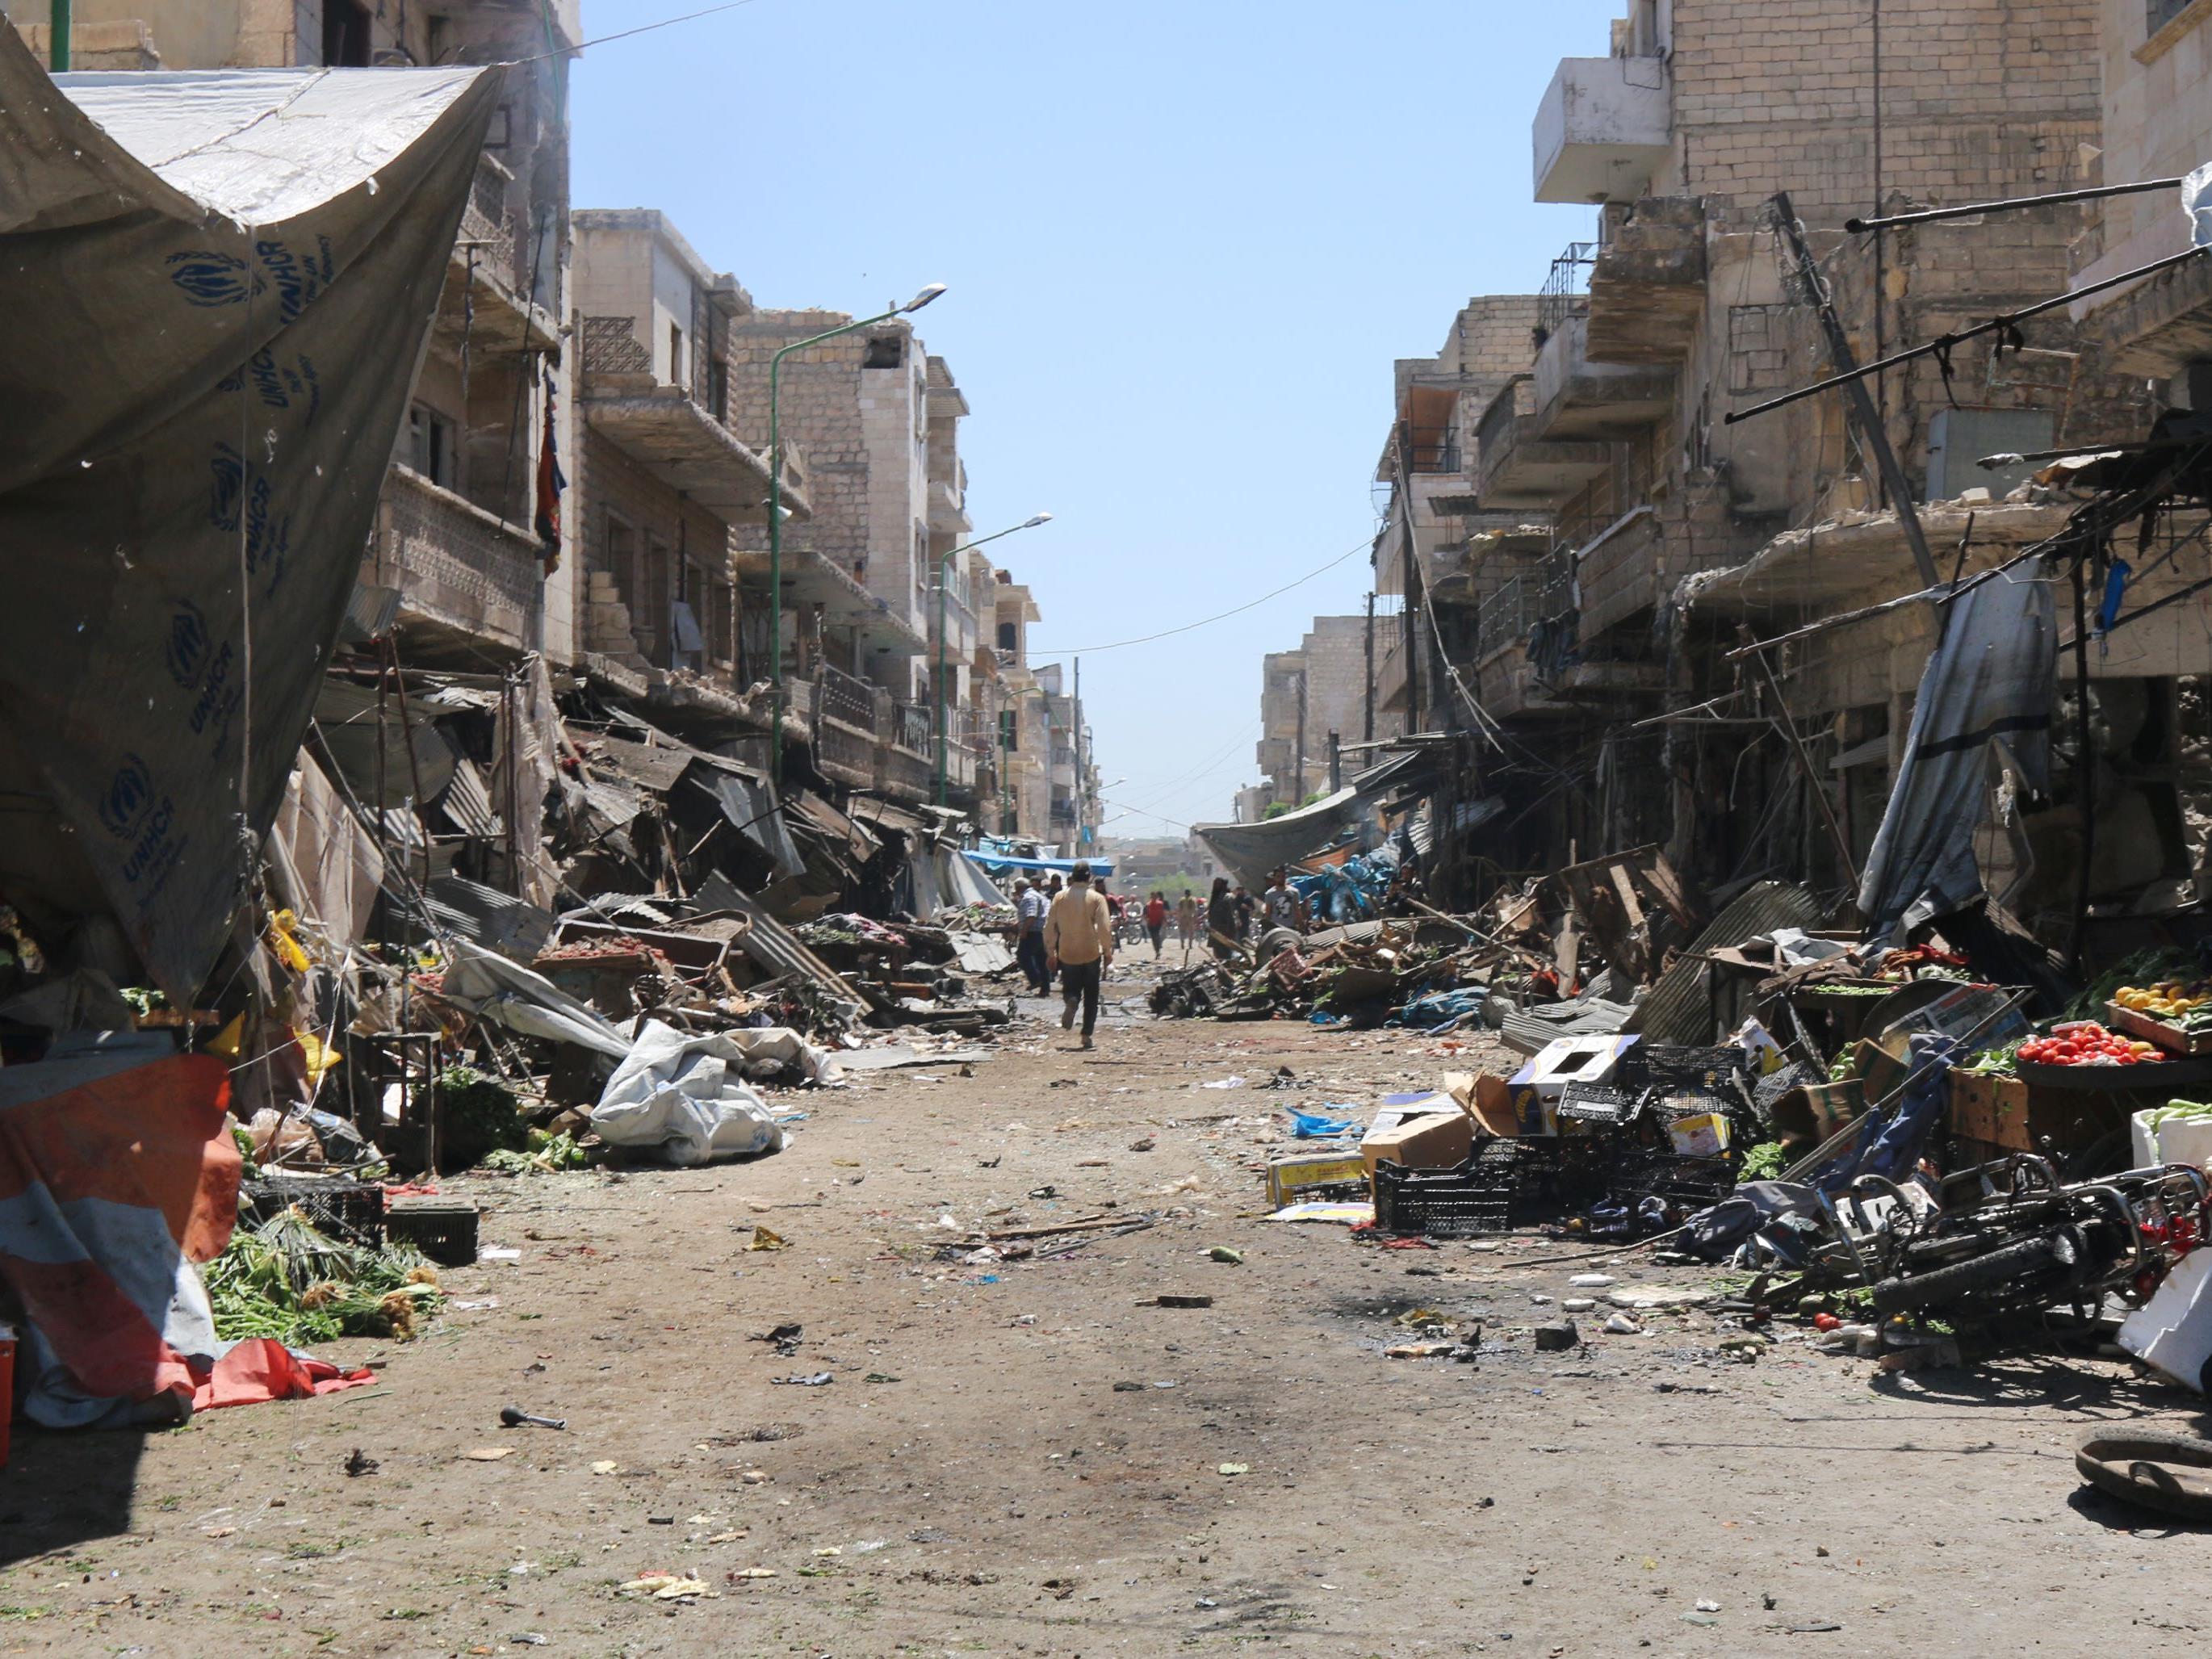 Aktivisten: Assad-Luftwaffe attackierte mehrere Marktplätze - Zivilisten getötet